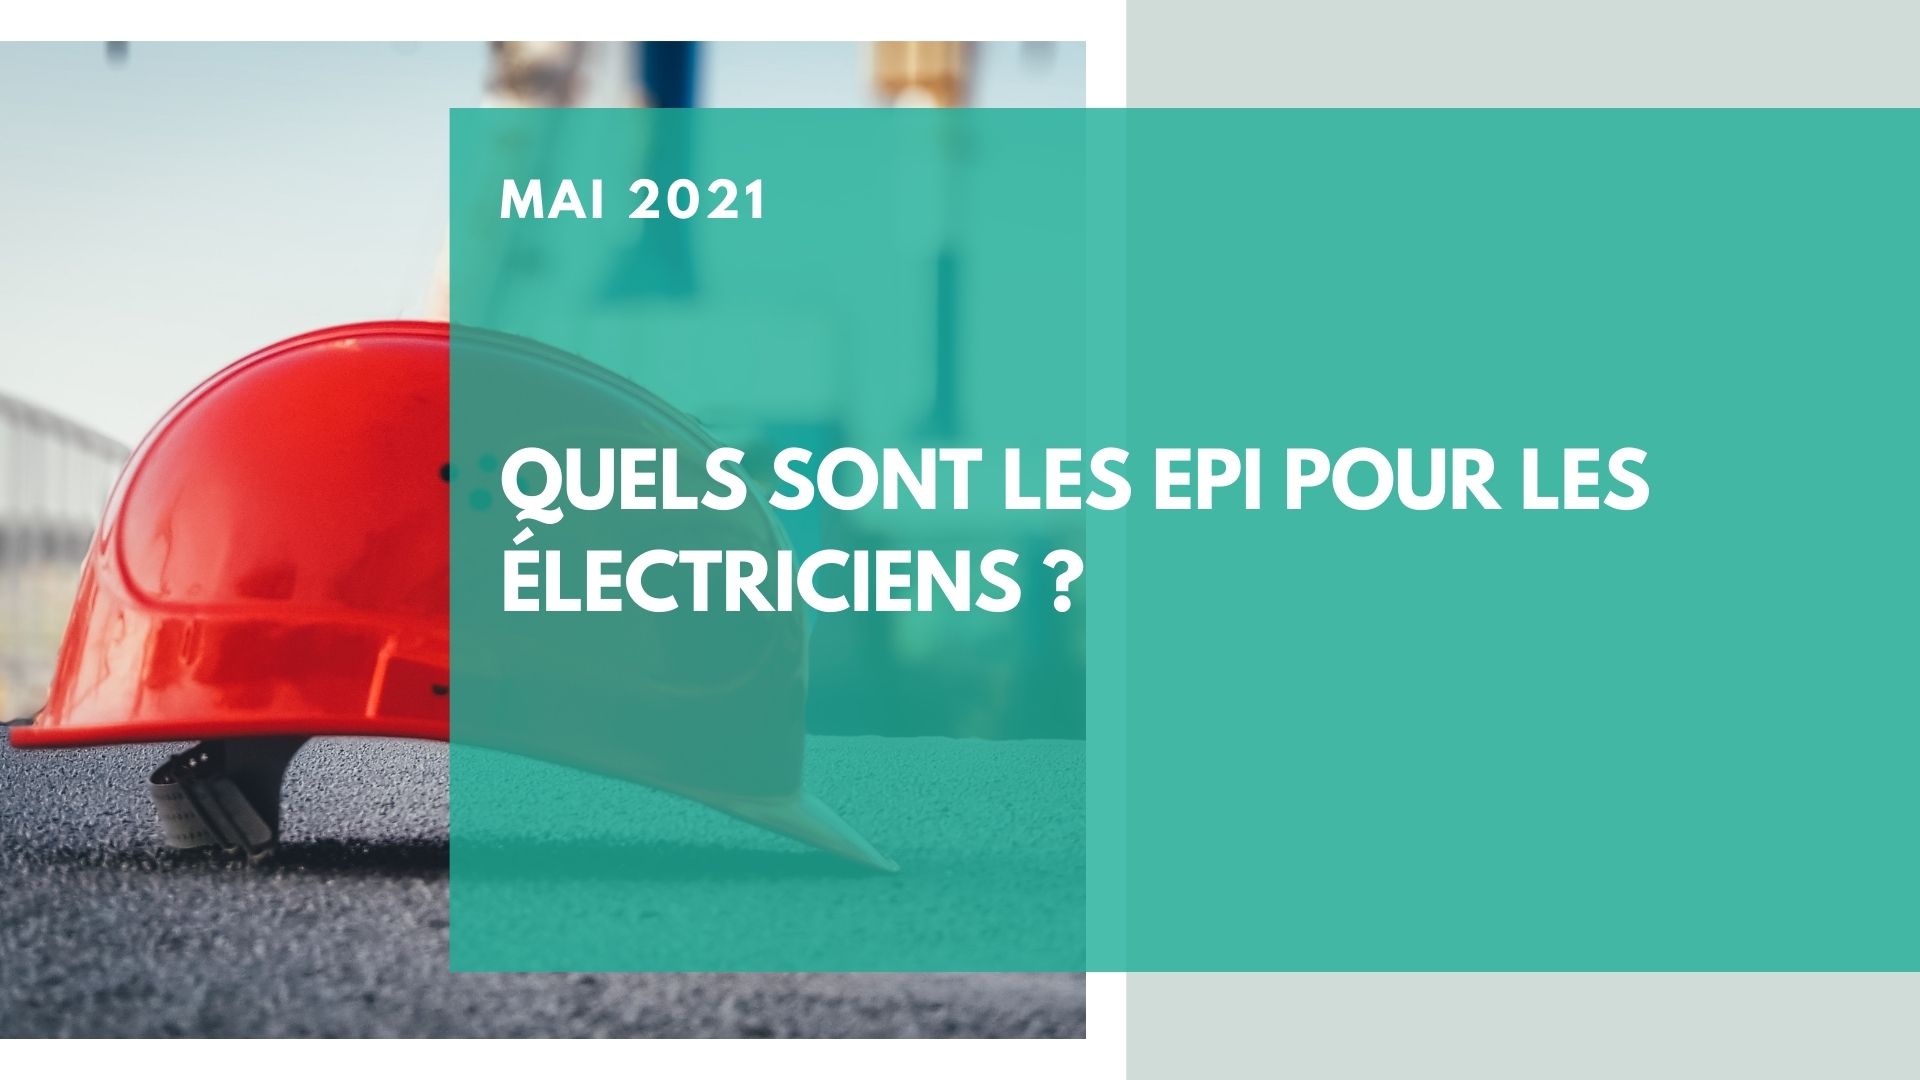 EPI électricien : quels équipements privilégier pour leur protection ?